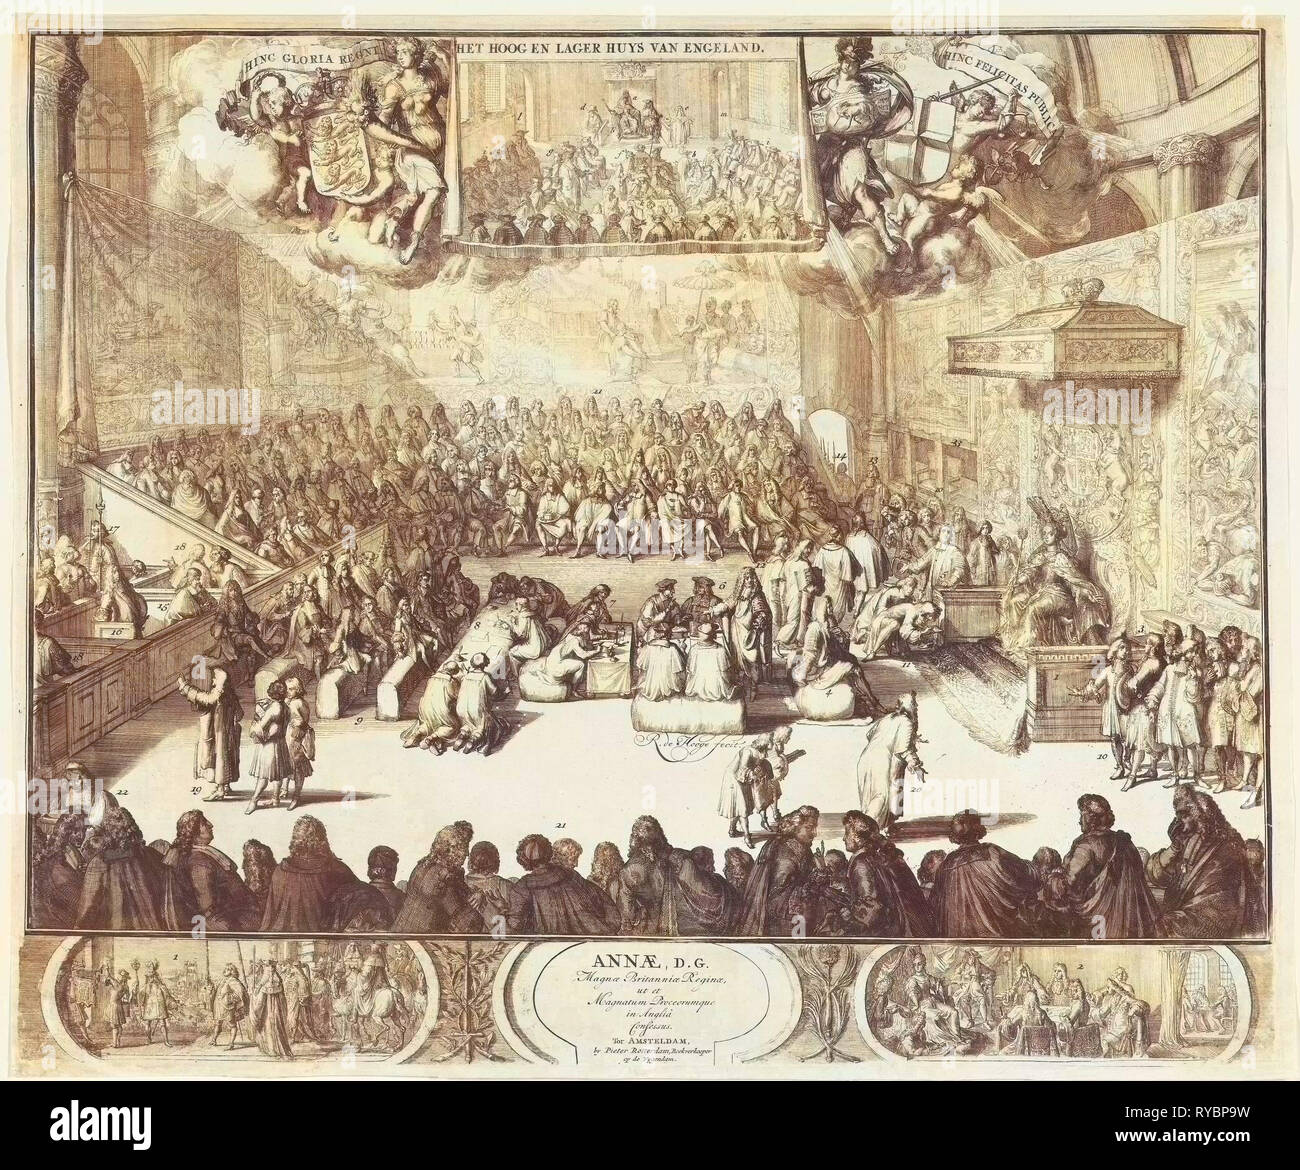 Session de la Chambre des communes avec la reine Anne sur le trône en 1702, Romeyn de Hooghe, 1702 Banque D'Images